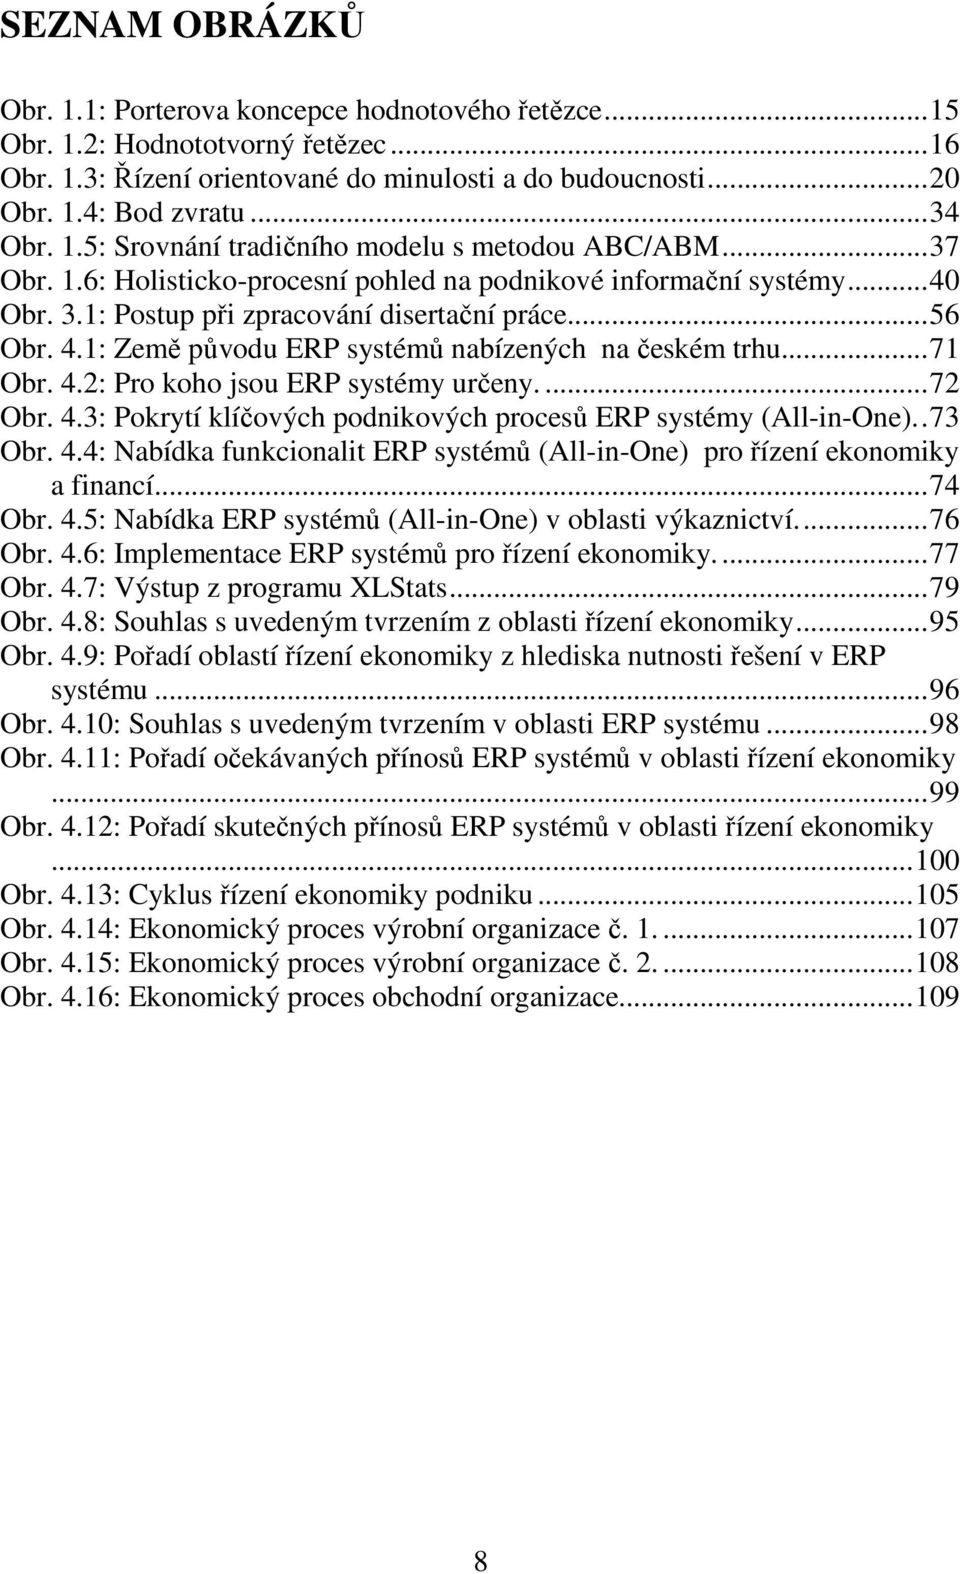 1: Země původu ERP systémů nabízených na českém trhu...71 Obr. 4.2: Pro koho jsou ERP systémy určeny....72 Obr. 4.3: Pokrytí klíčových podnikových procesů ERP systémy (All-in-One)..73 Obr. 4.4: Nabídka funkcionalit ERP systémů (All-in-One) pro řízení ekonomiky a financí.